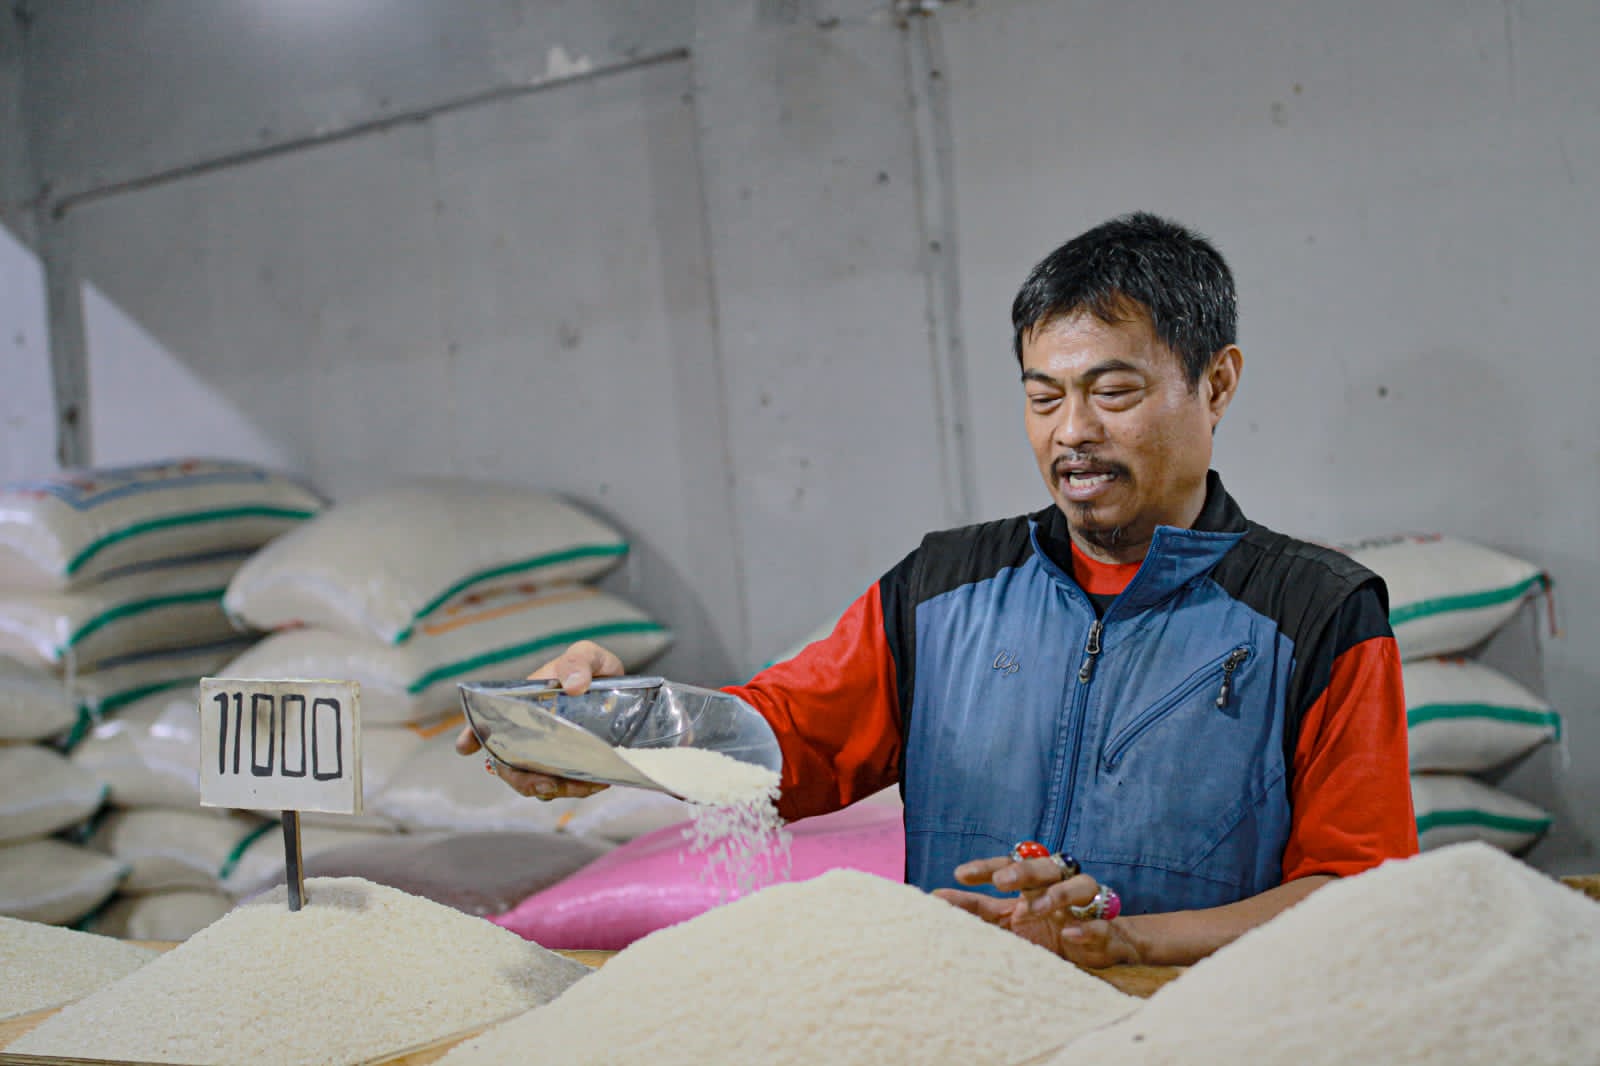 JUAL MAHAL: Harga beras yang dijual di pasar Kota Bandung saat ini meroket dan belum ada tanda-tanda kembali normal. (KHOLID/JABAR EKSPRES)